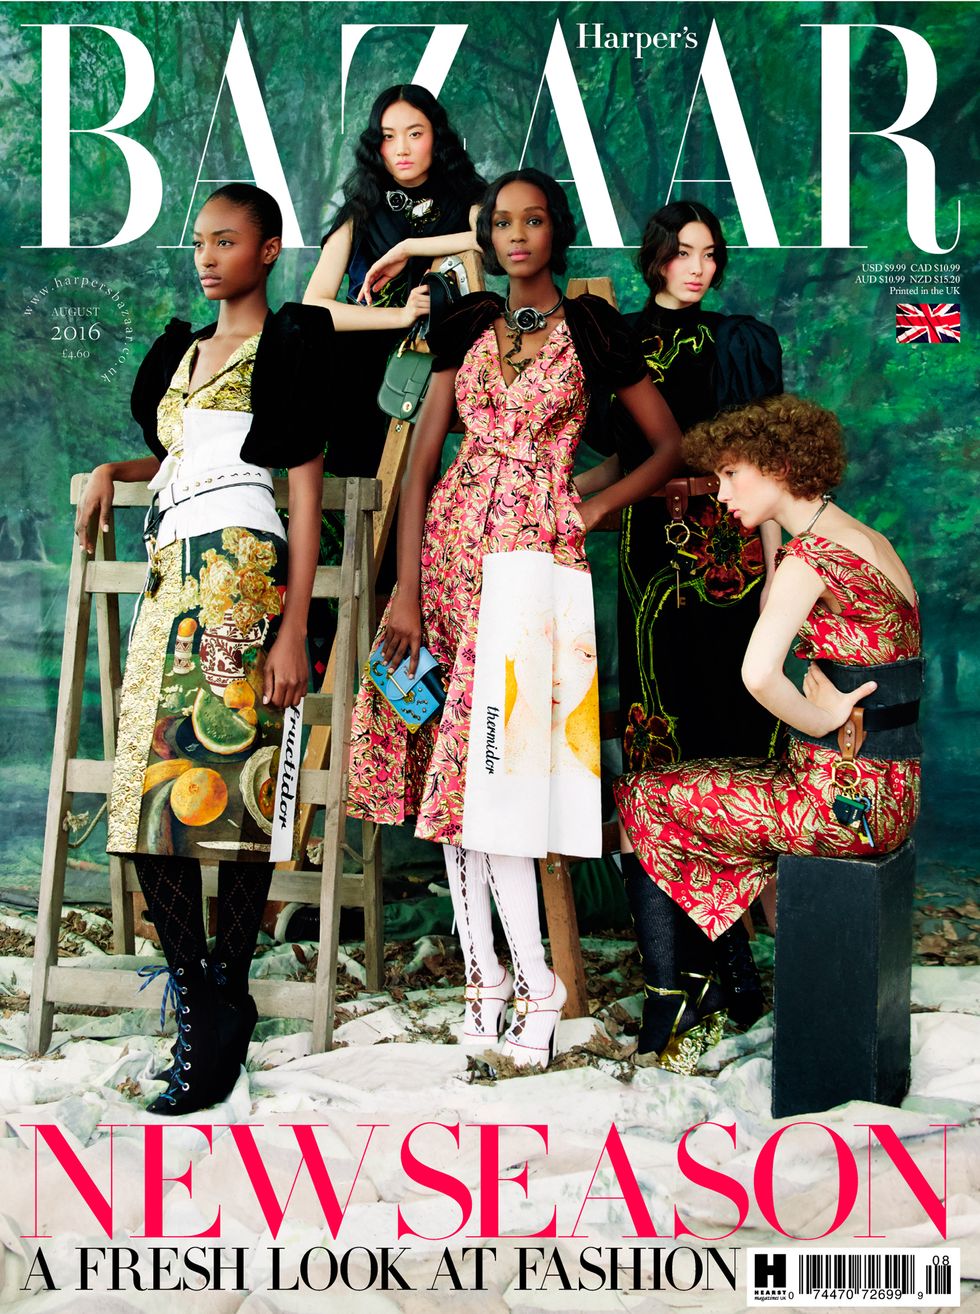 Harper's Bazaar August cover